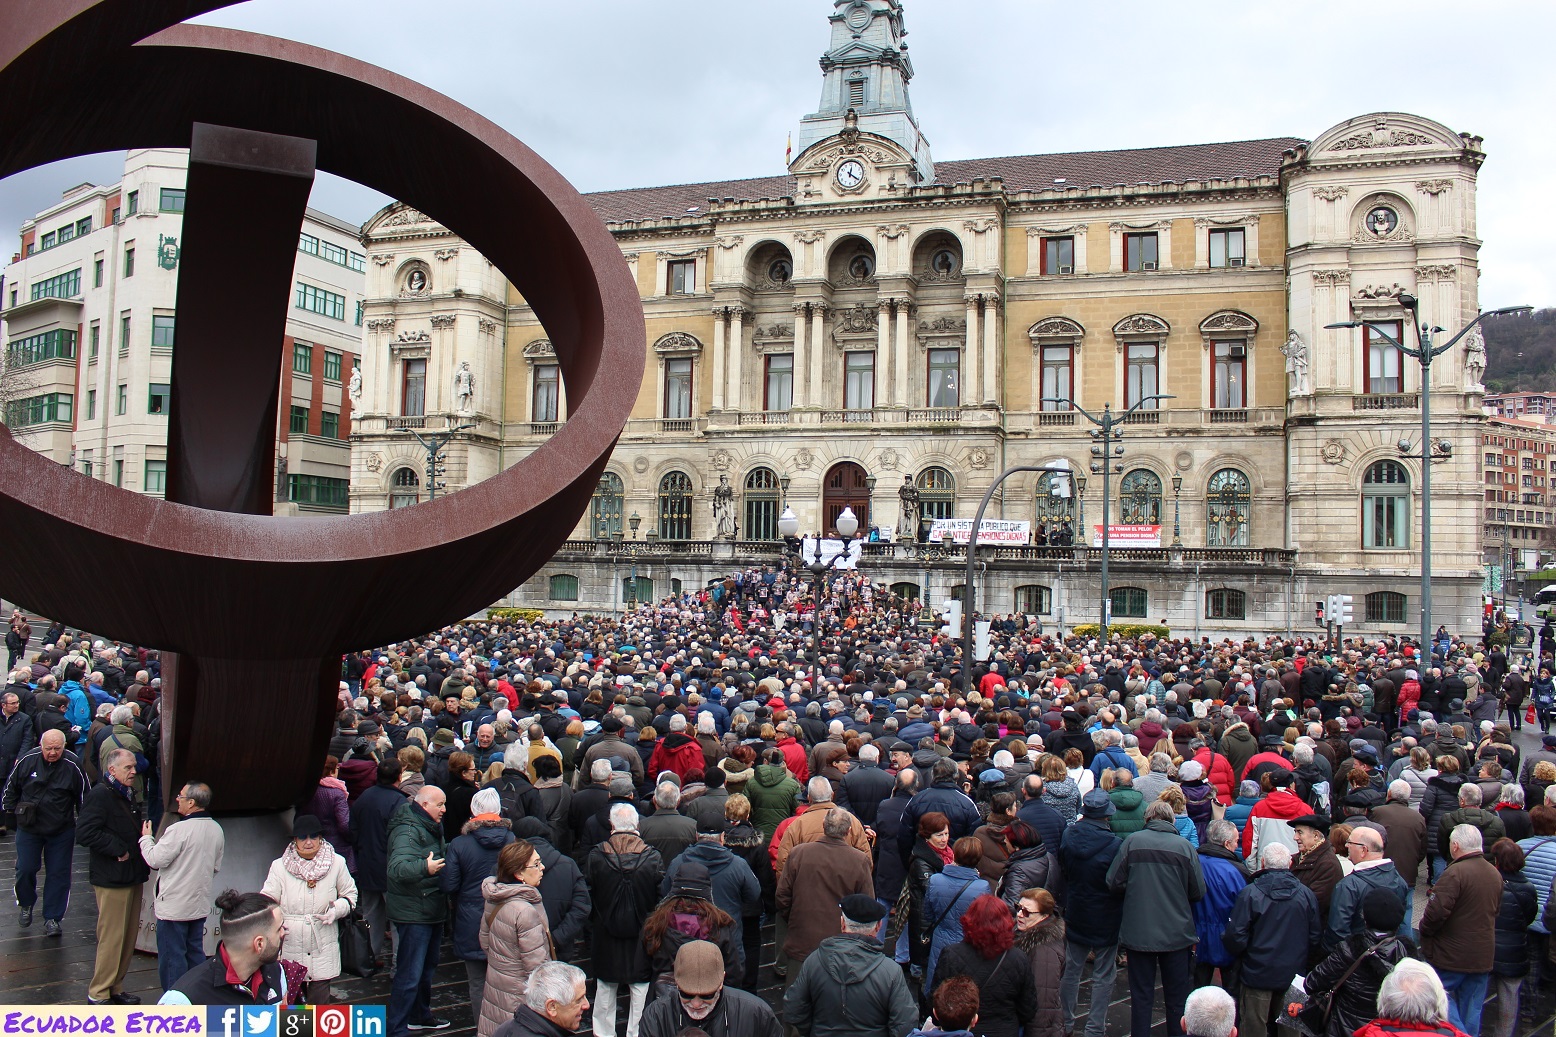 Convocada gran movilización en defensa de unas pensiones públicas dignas en Bilbao.